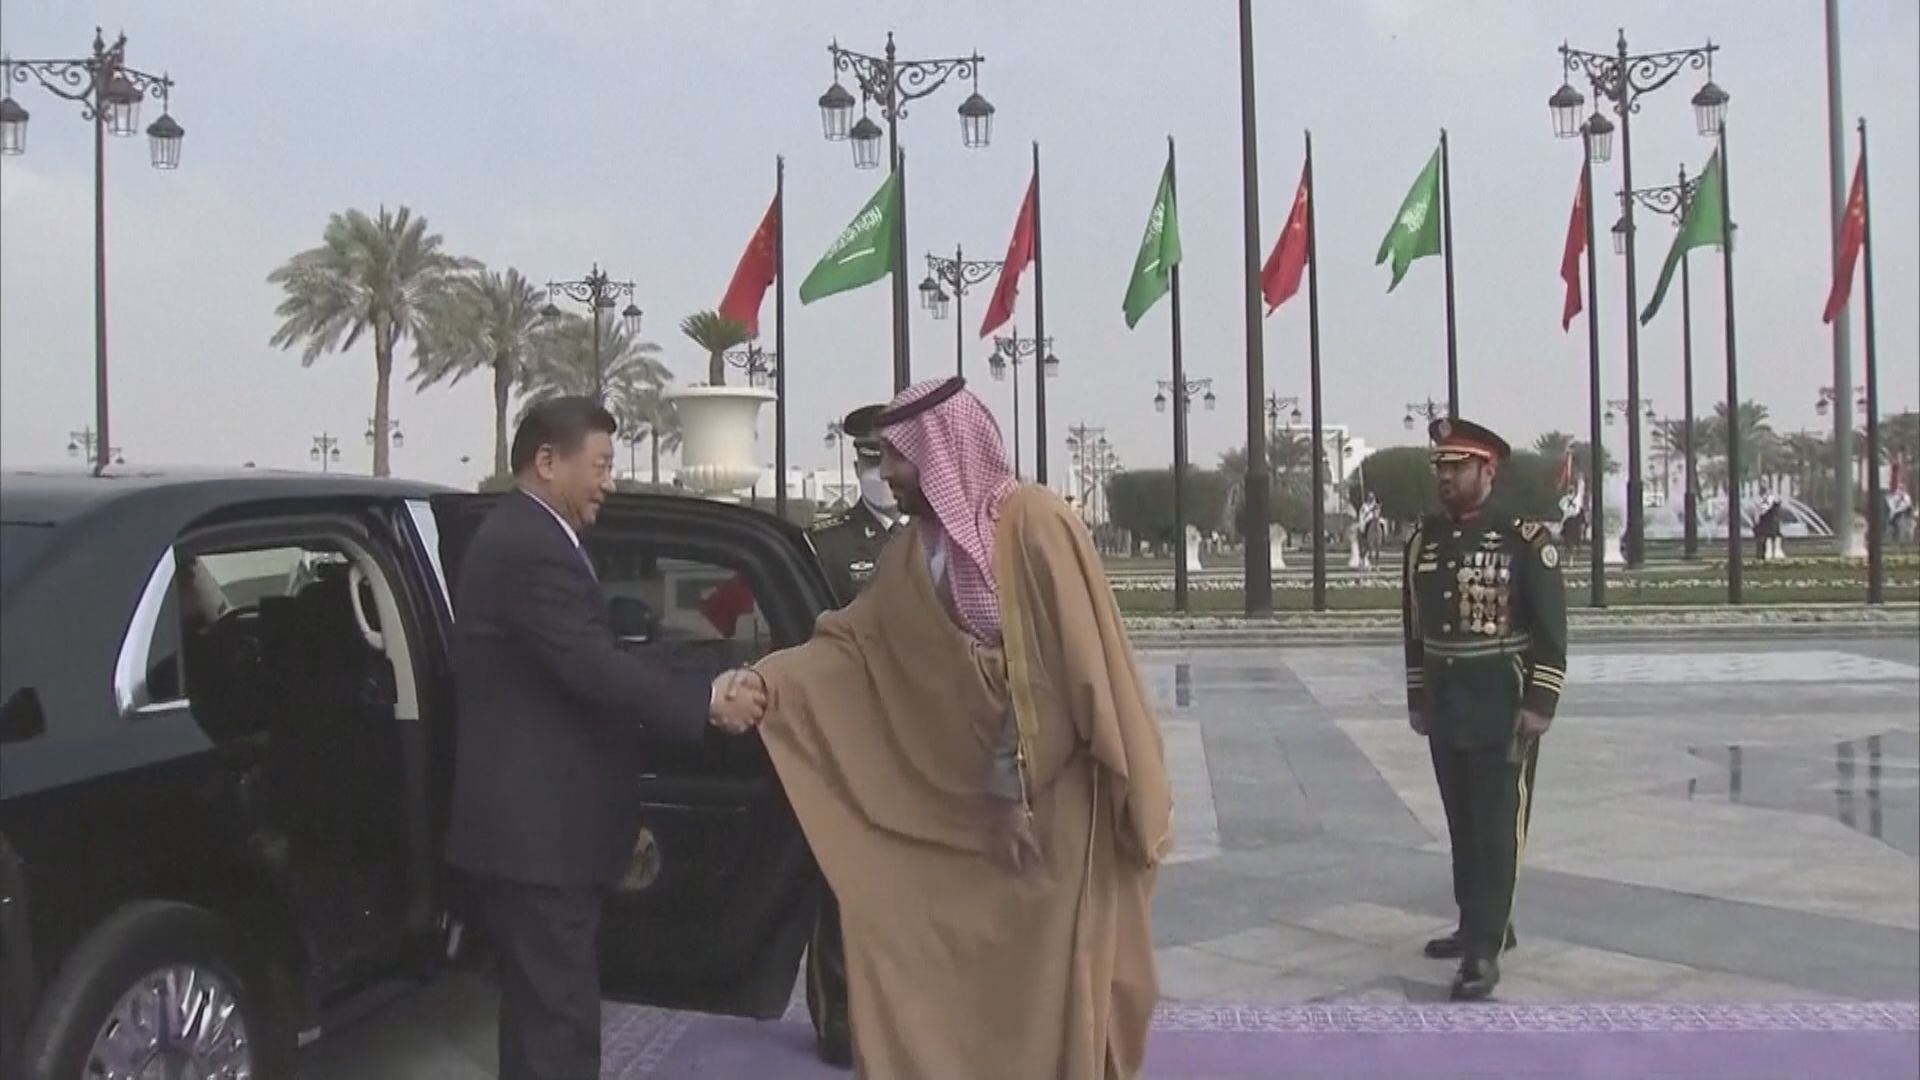 【習近平訪沙特】與沙特王儲會談 指沙特是中國重要戰略夥伴